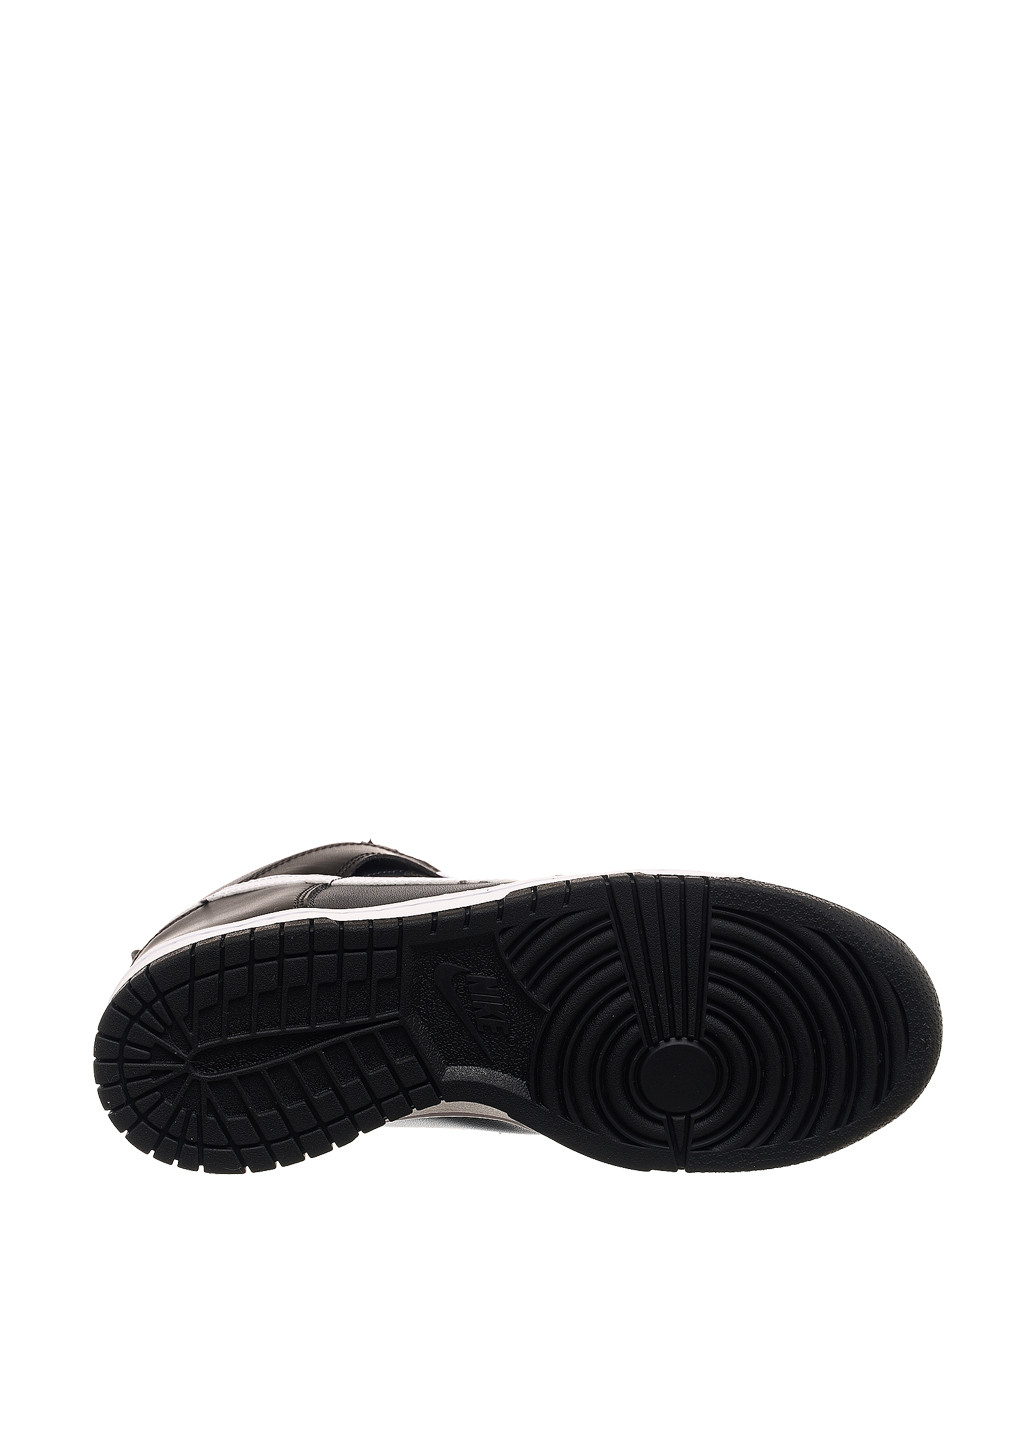 Черные демисезонные кроссовки dh9751-001_2024 Nike Dunk High Gs